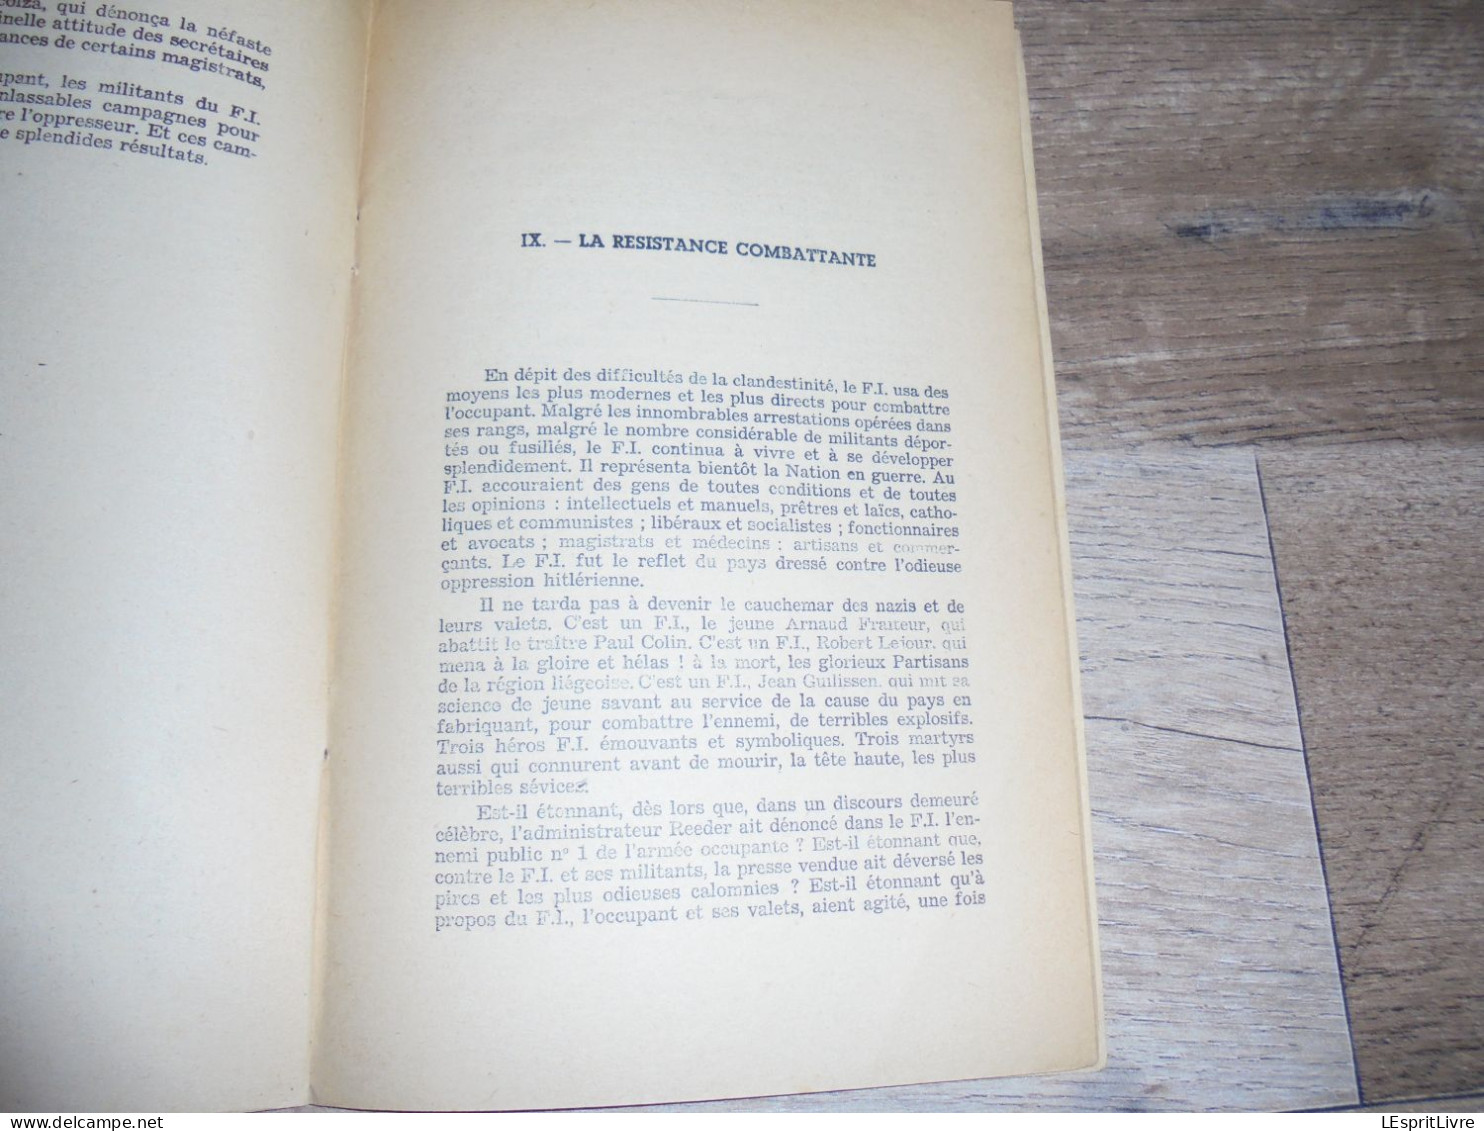 Les Cahiers du F I N° 2 F Demany Histoire de la Résistance Belge et du Front de l'Indépendance Guerre 40 45 Libération